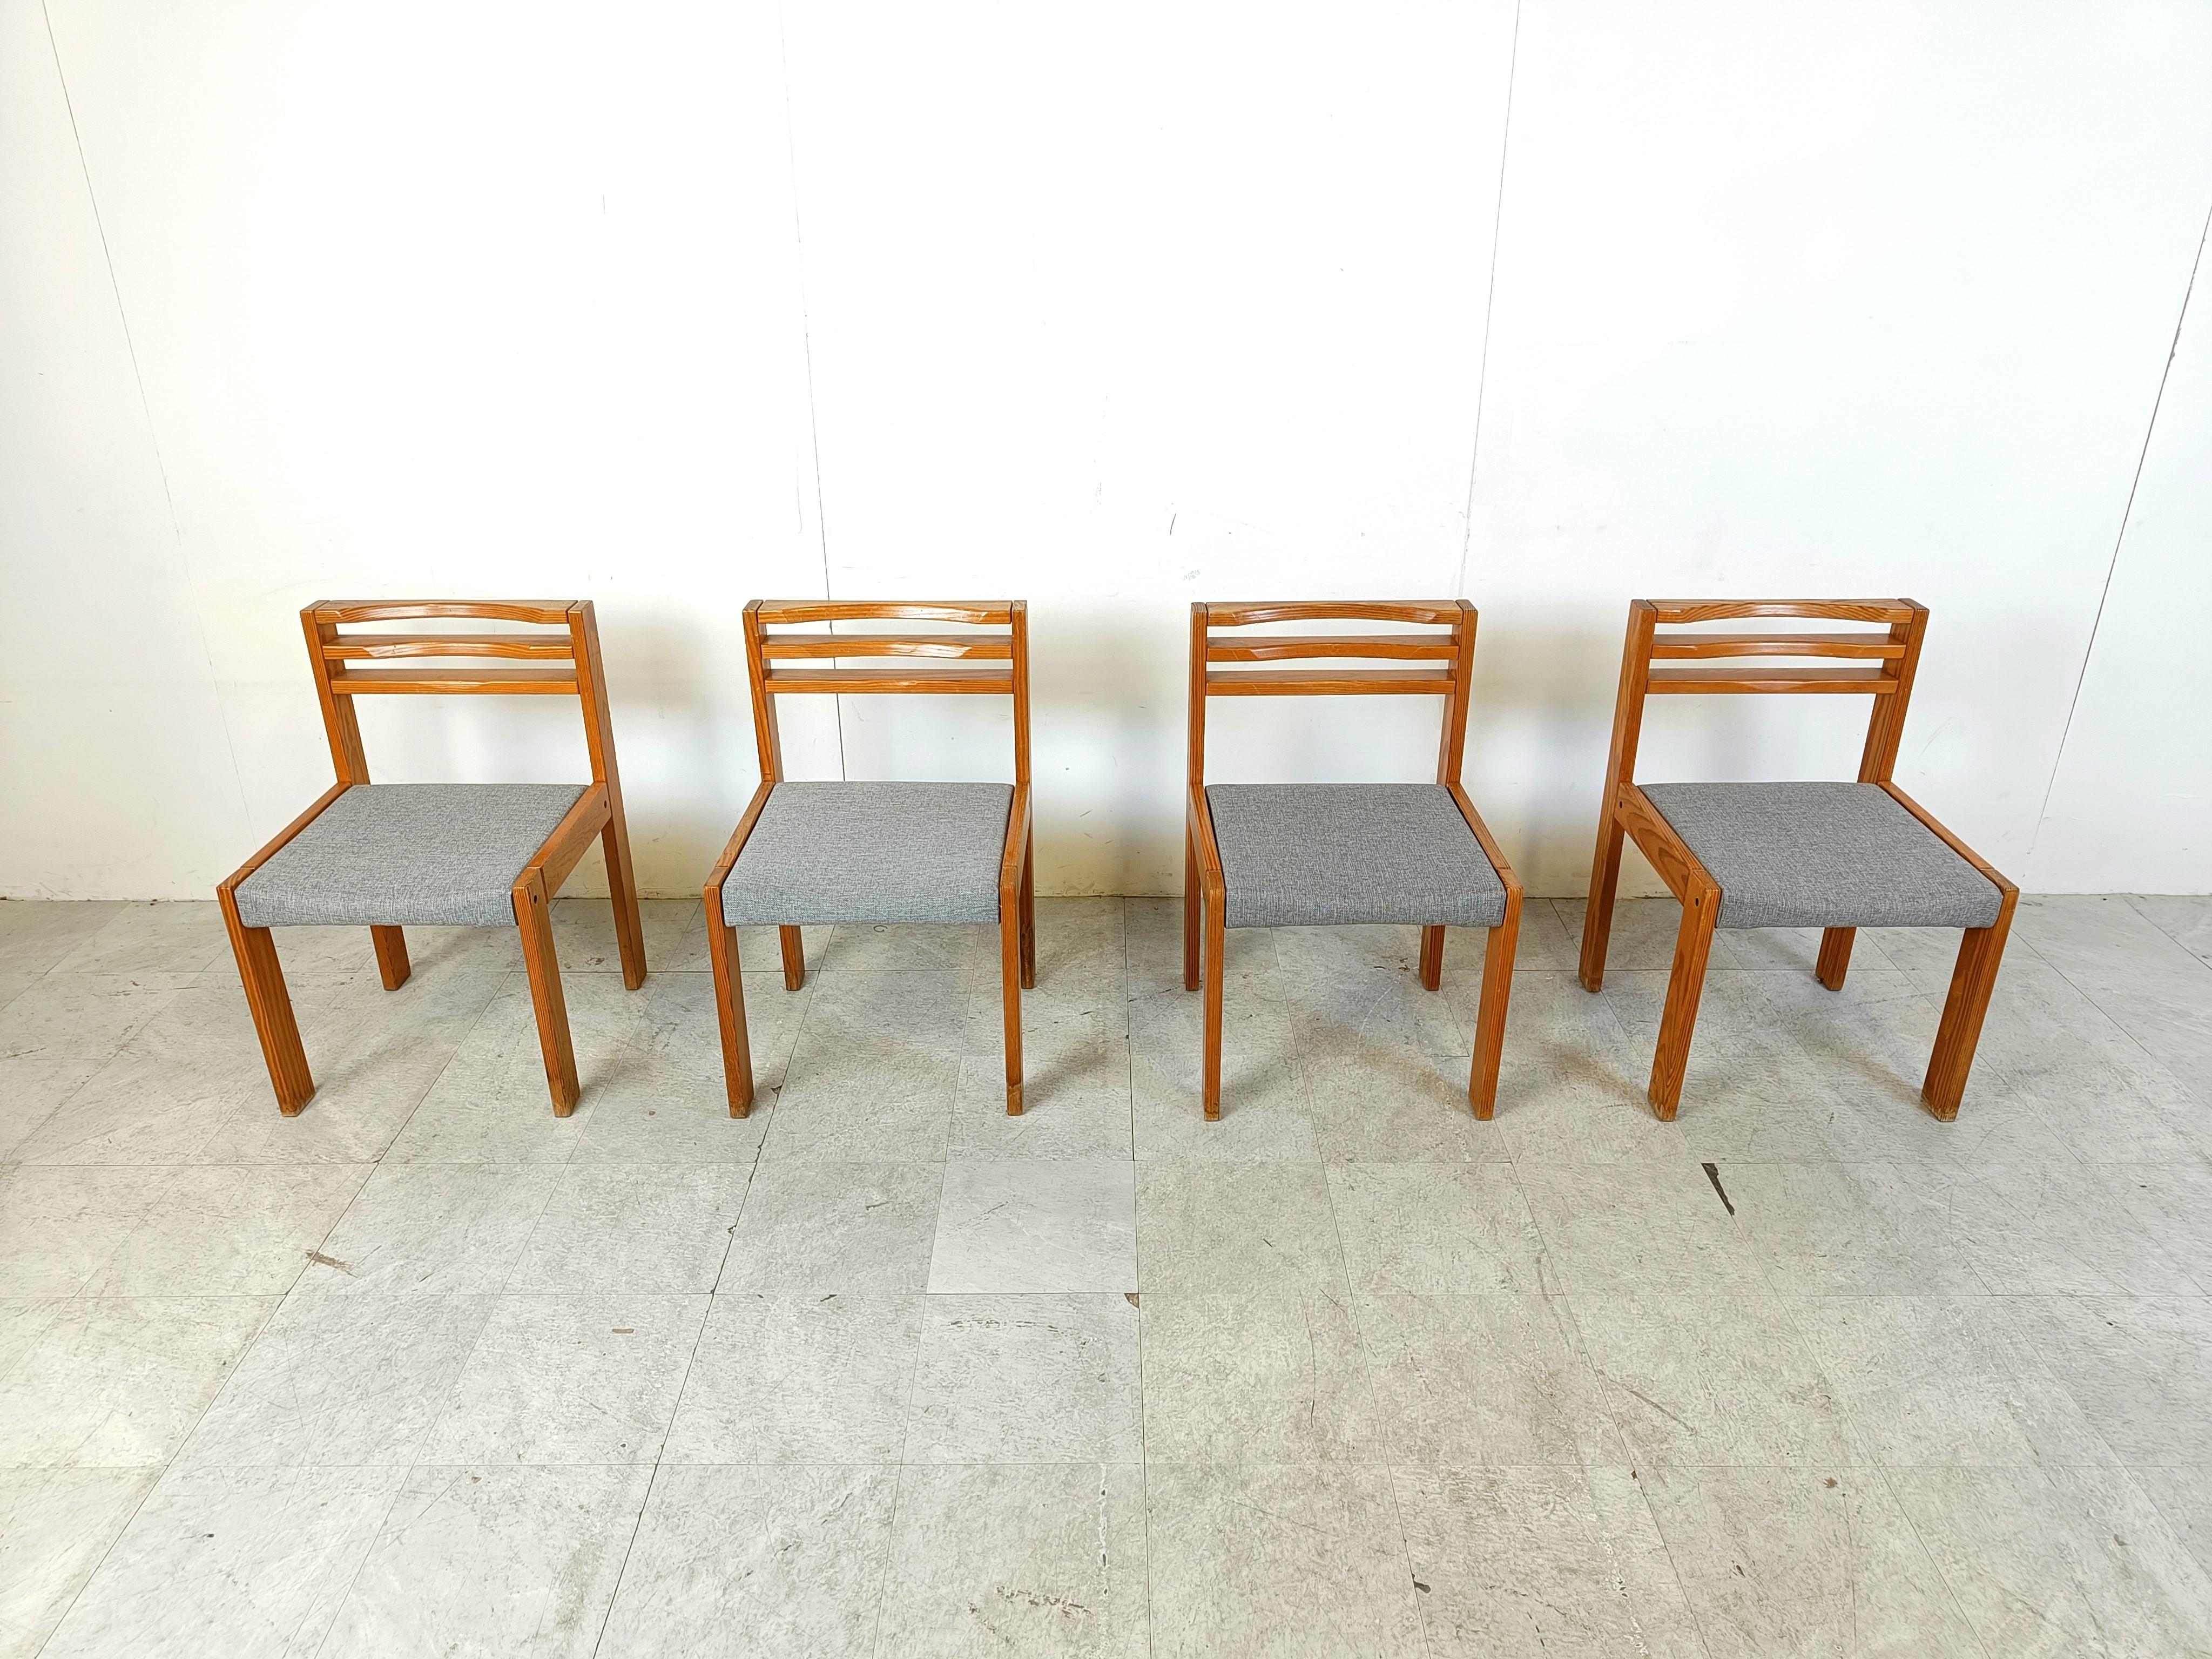 Ensemble de 4 chaises de salle à manger SG 1200 conçues par Cees Braakman pour Pastoe.

Les chaises ont un cadre en bois de pin et des sièges en tissu gris.

Chaises intemporelles cool et stury

Années 1970 - Pays-Bas

Hauteur : 80cm/31.49